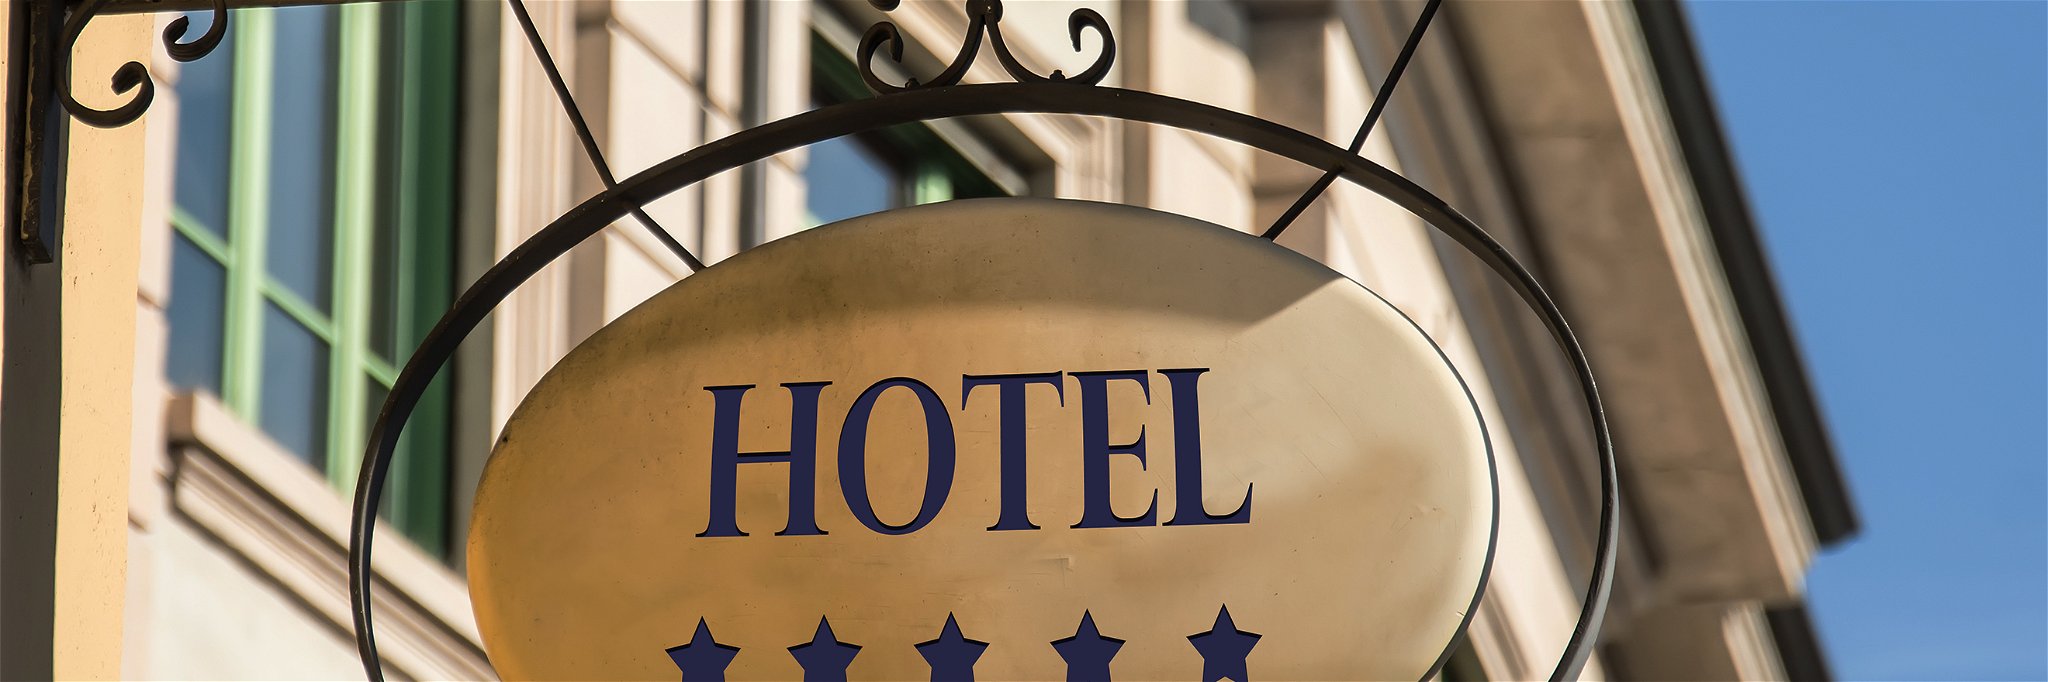 Hotels in Österreich wurden zuletzt öfters direkt gebucht.